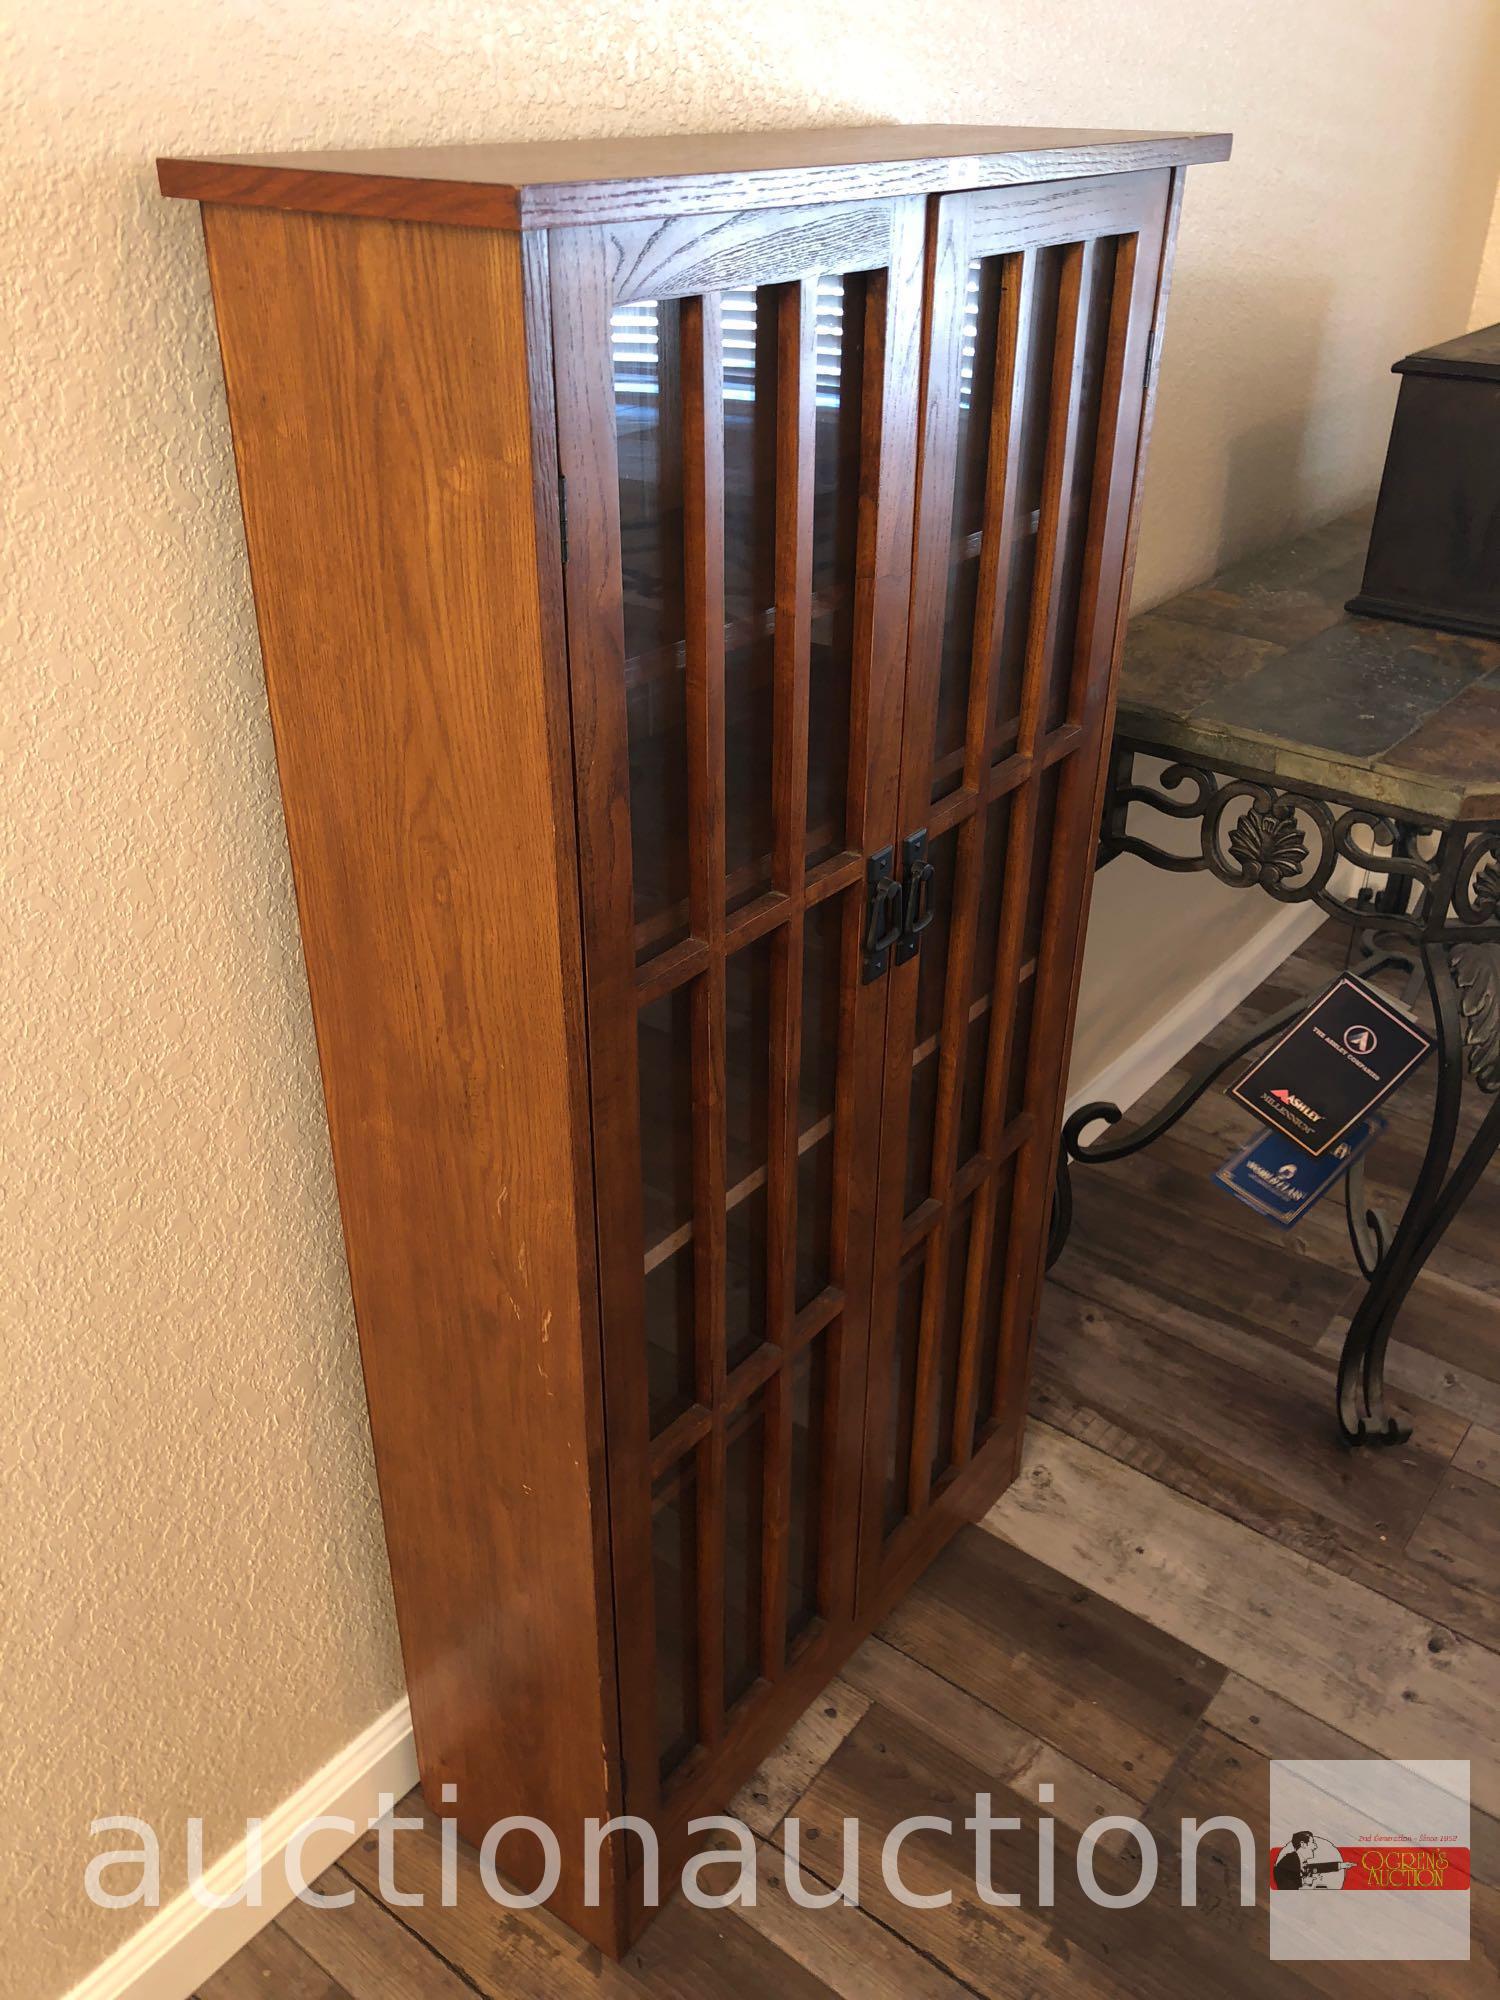 Furniture - Mission styled oak display cabinet, 5 shelves, 2 door, 26"wx9"dx48"h